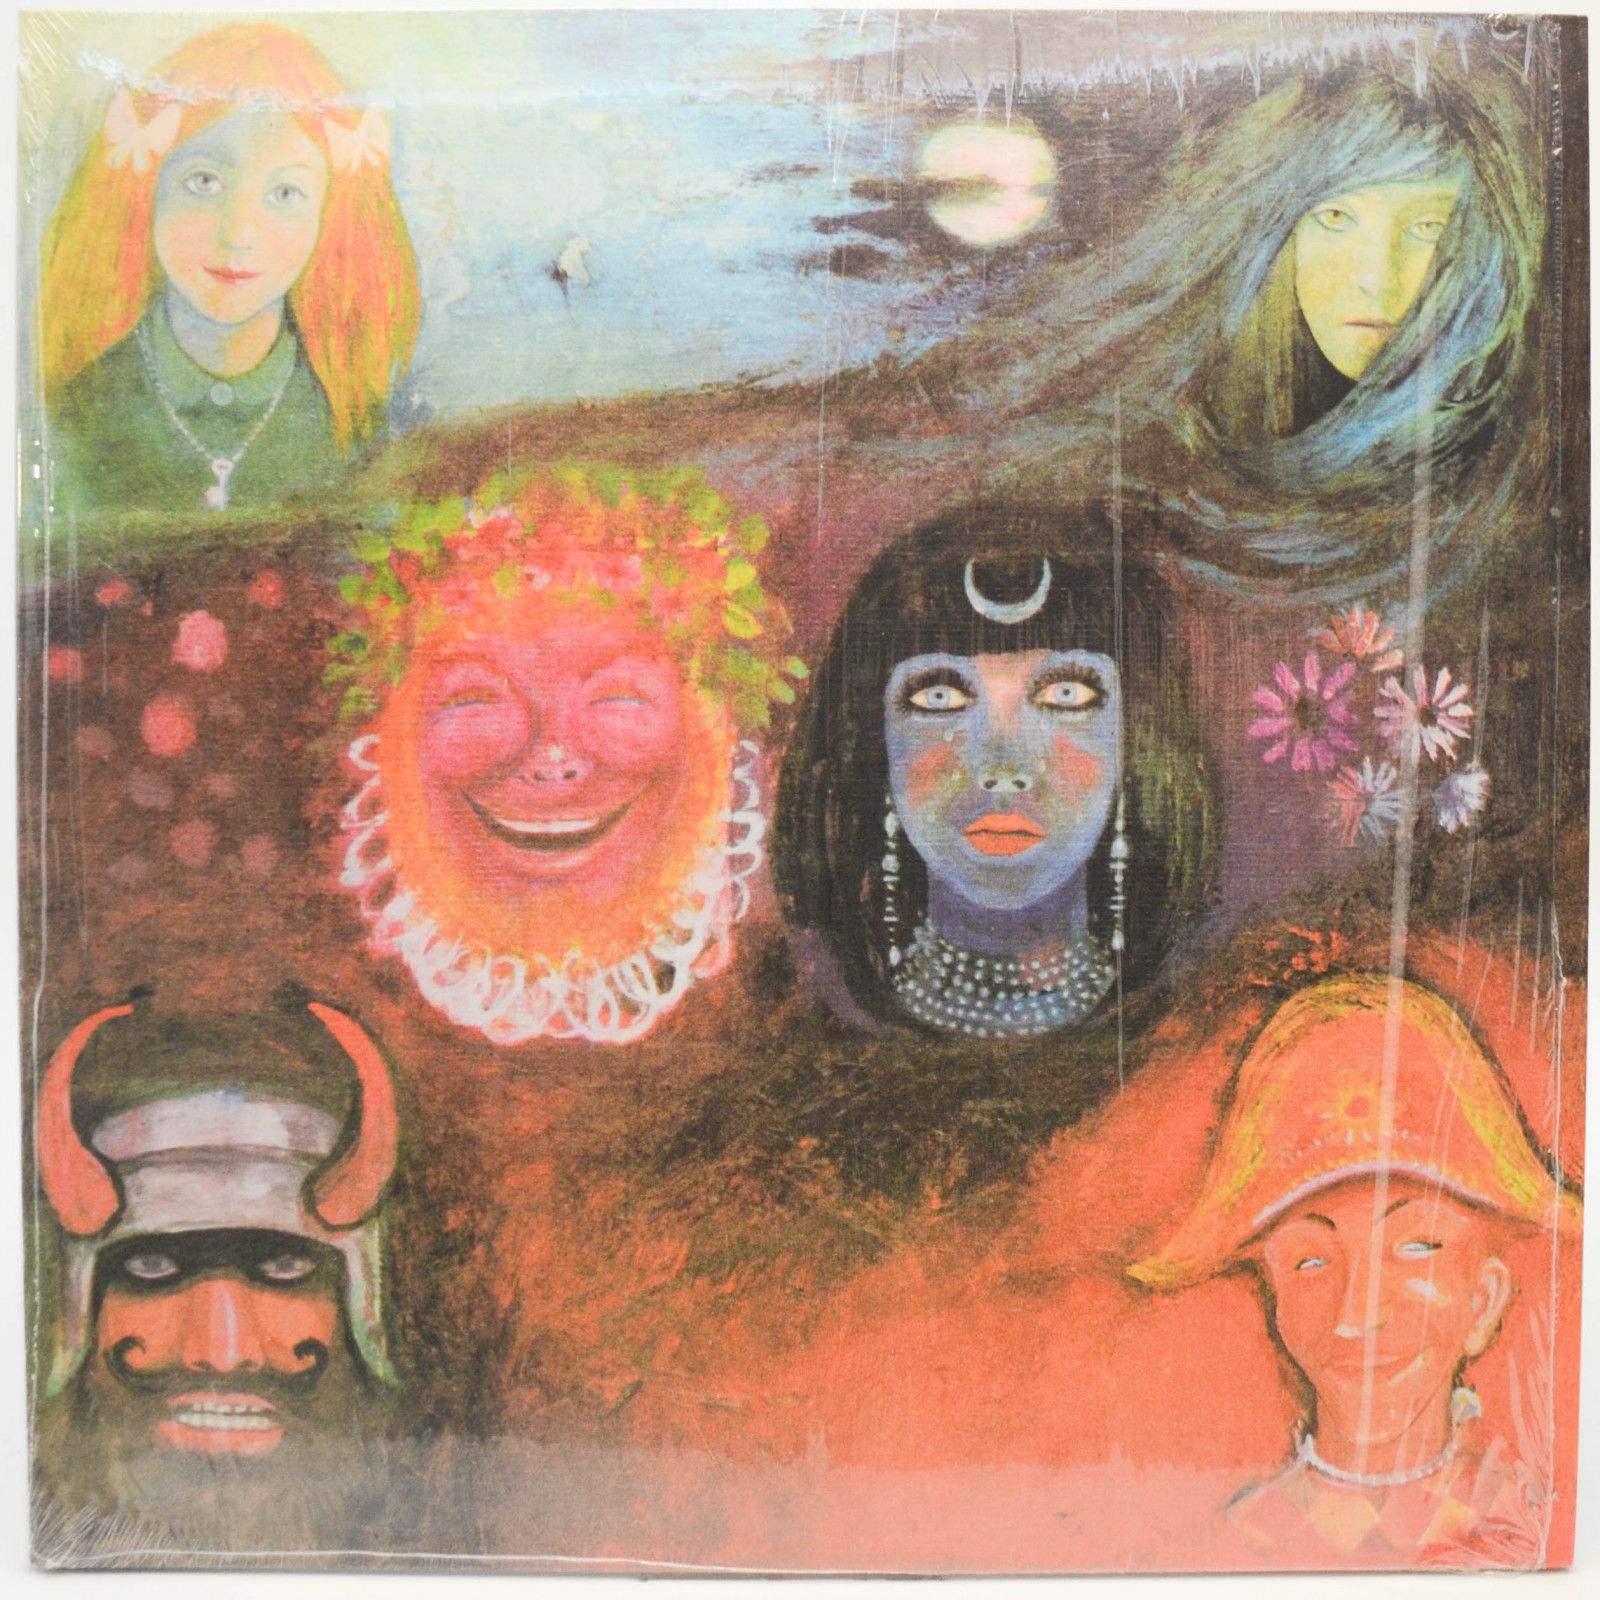 King Crimson — In The Wake Of Poseidon, 1970